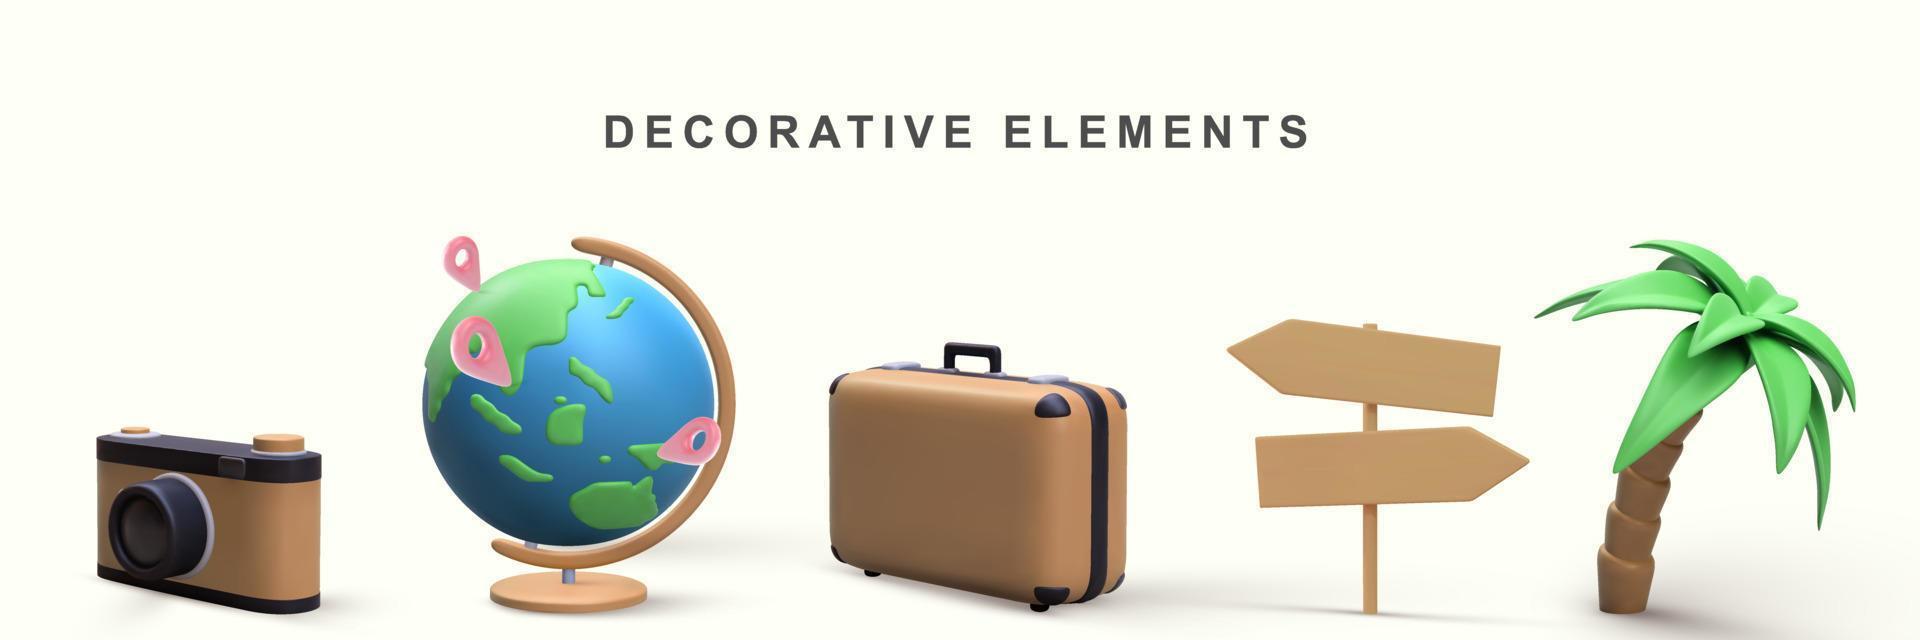 3d realistisk uppsättning av dekorativ element - kamera, klot, resväska, väg tecken och handflatan träd. vektor illustration.